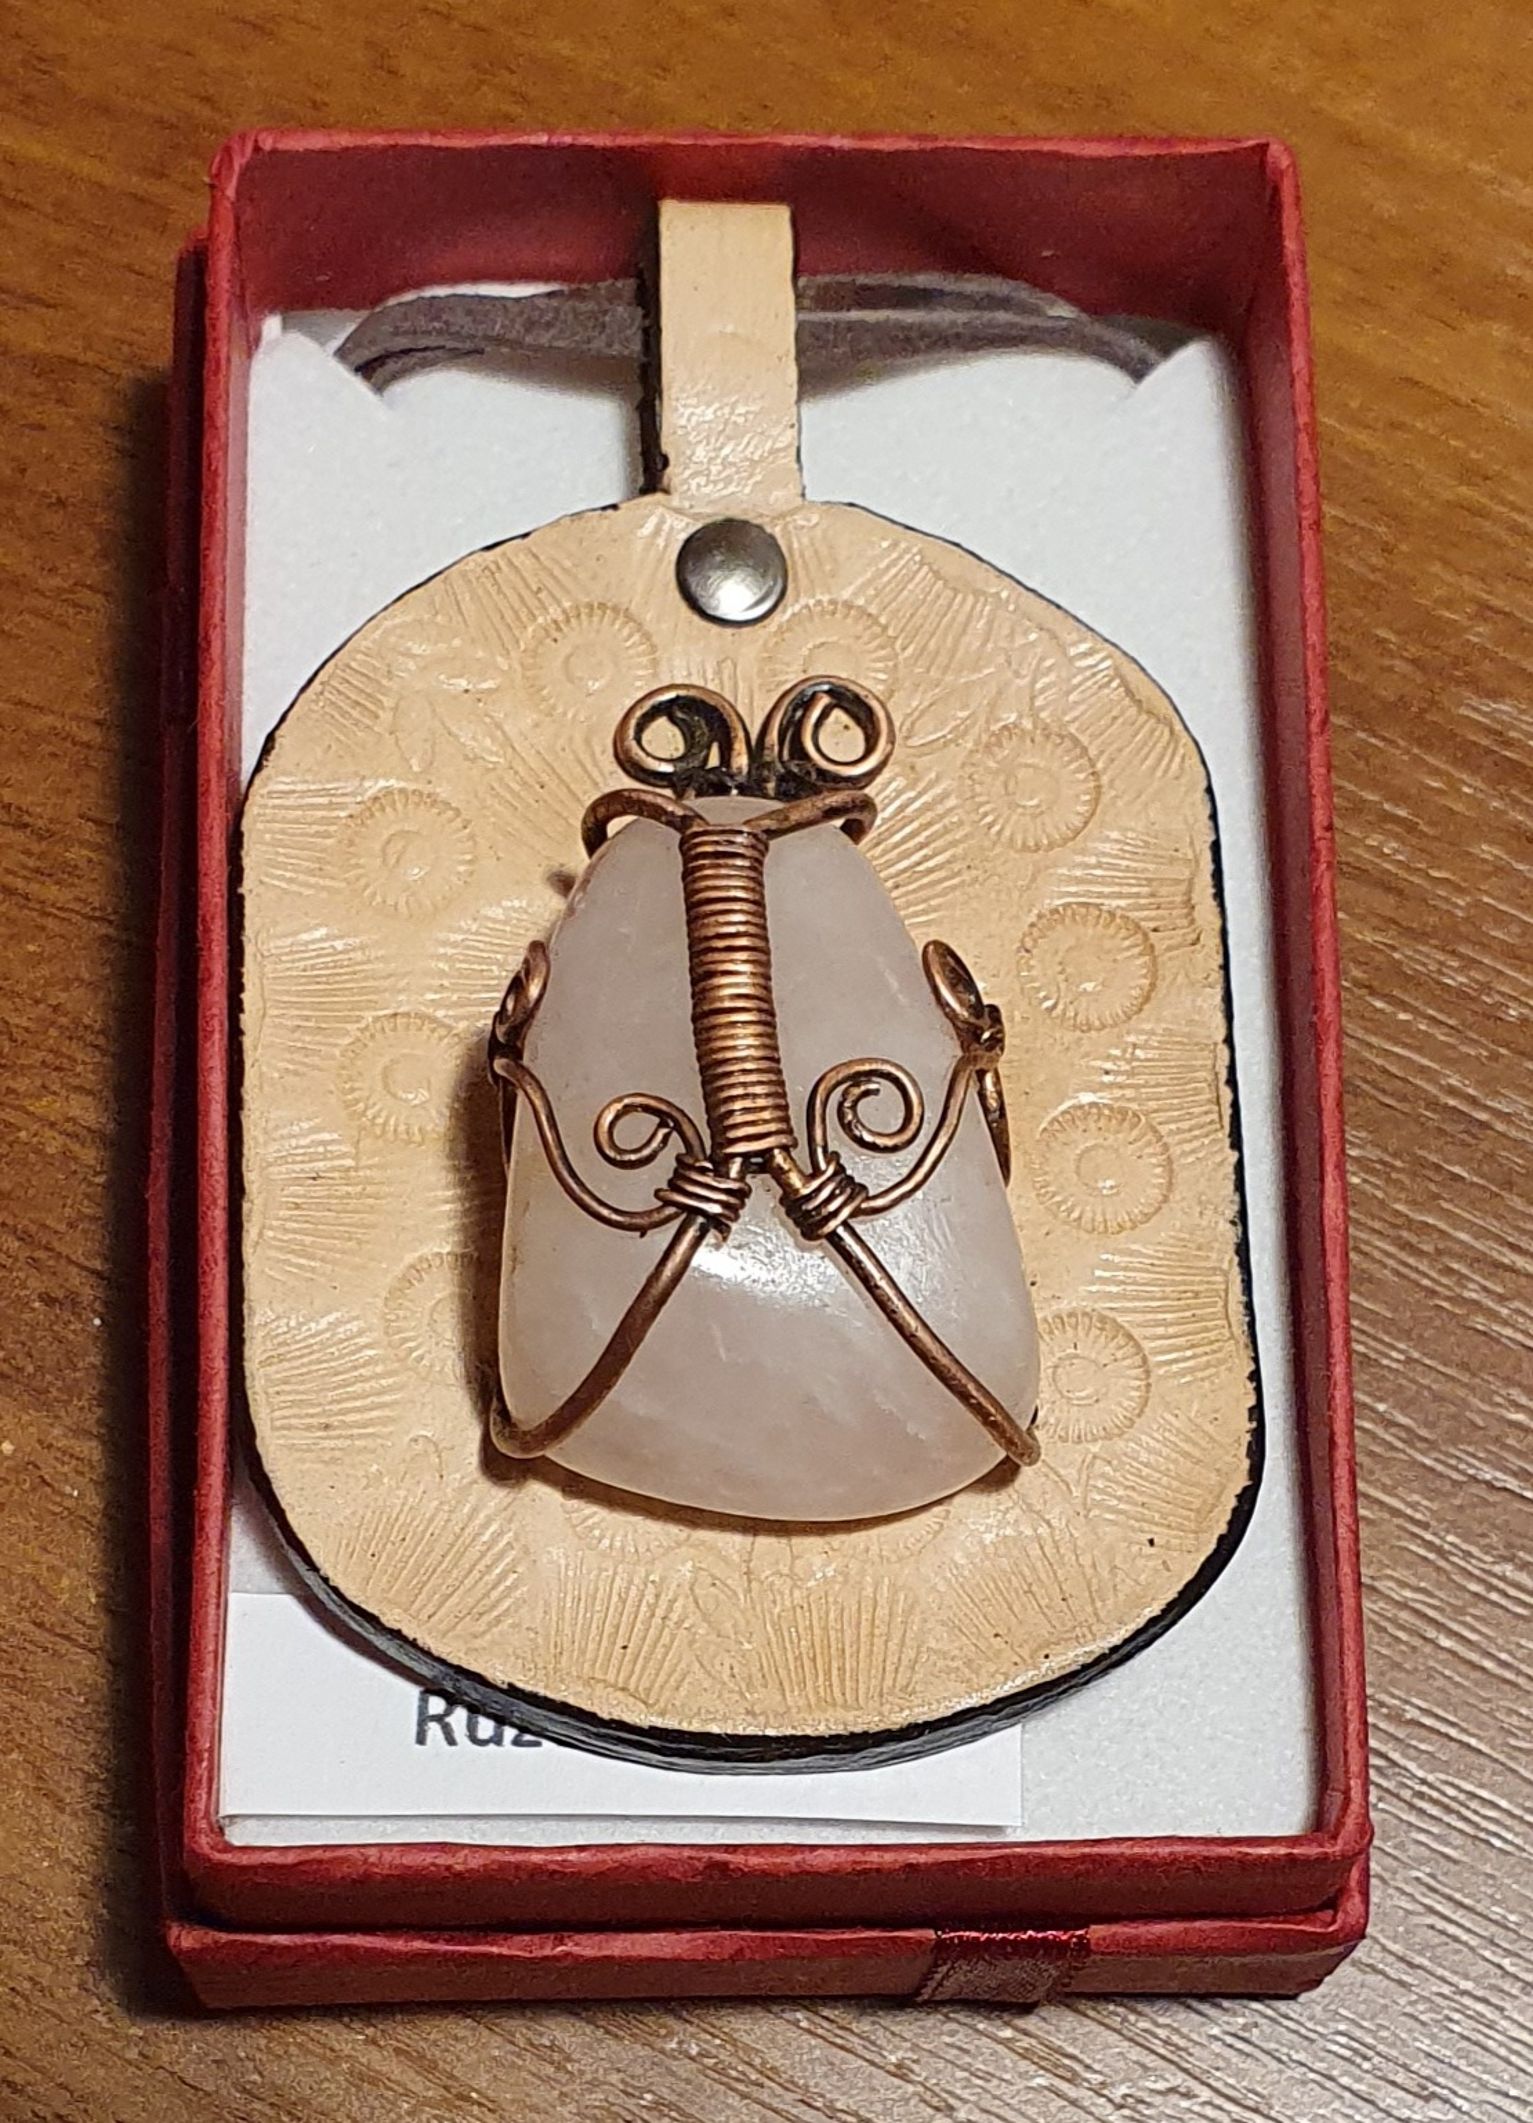 Náhrdelník - Brouček - autorský  drátkovaný šperk s Růženínem na koženém terči (6,5x4cm), cena 600 Kč